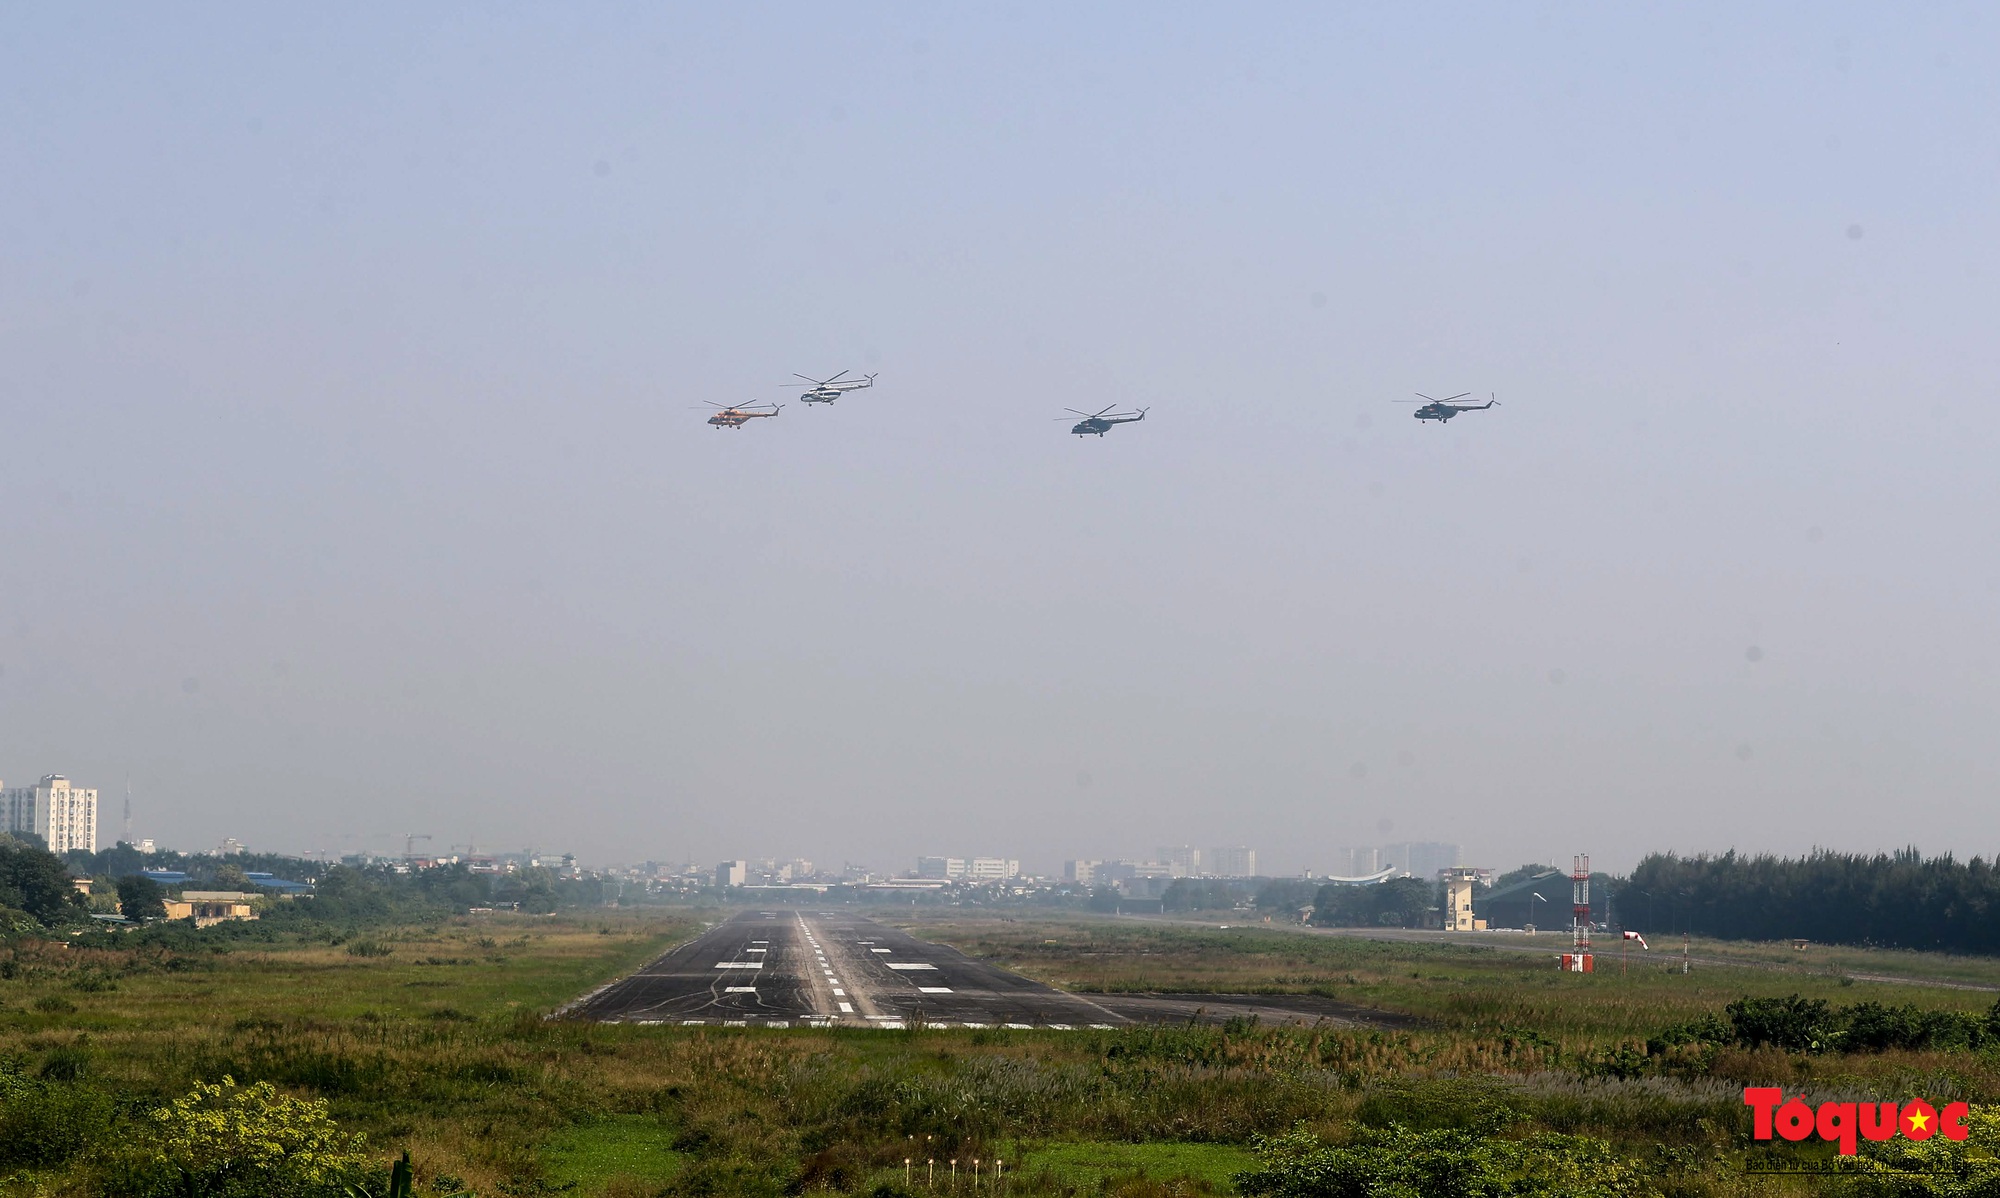 Mãn nhãn với  máy bay chiến đấu Sukhoi và trực thăng Mi thao diễn trên bầu trời Thủ đô Hà Nội - Ảnh 4.